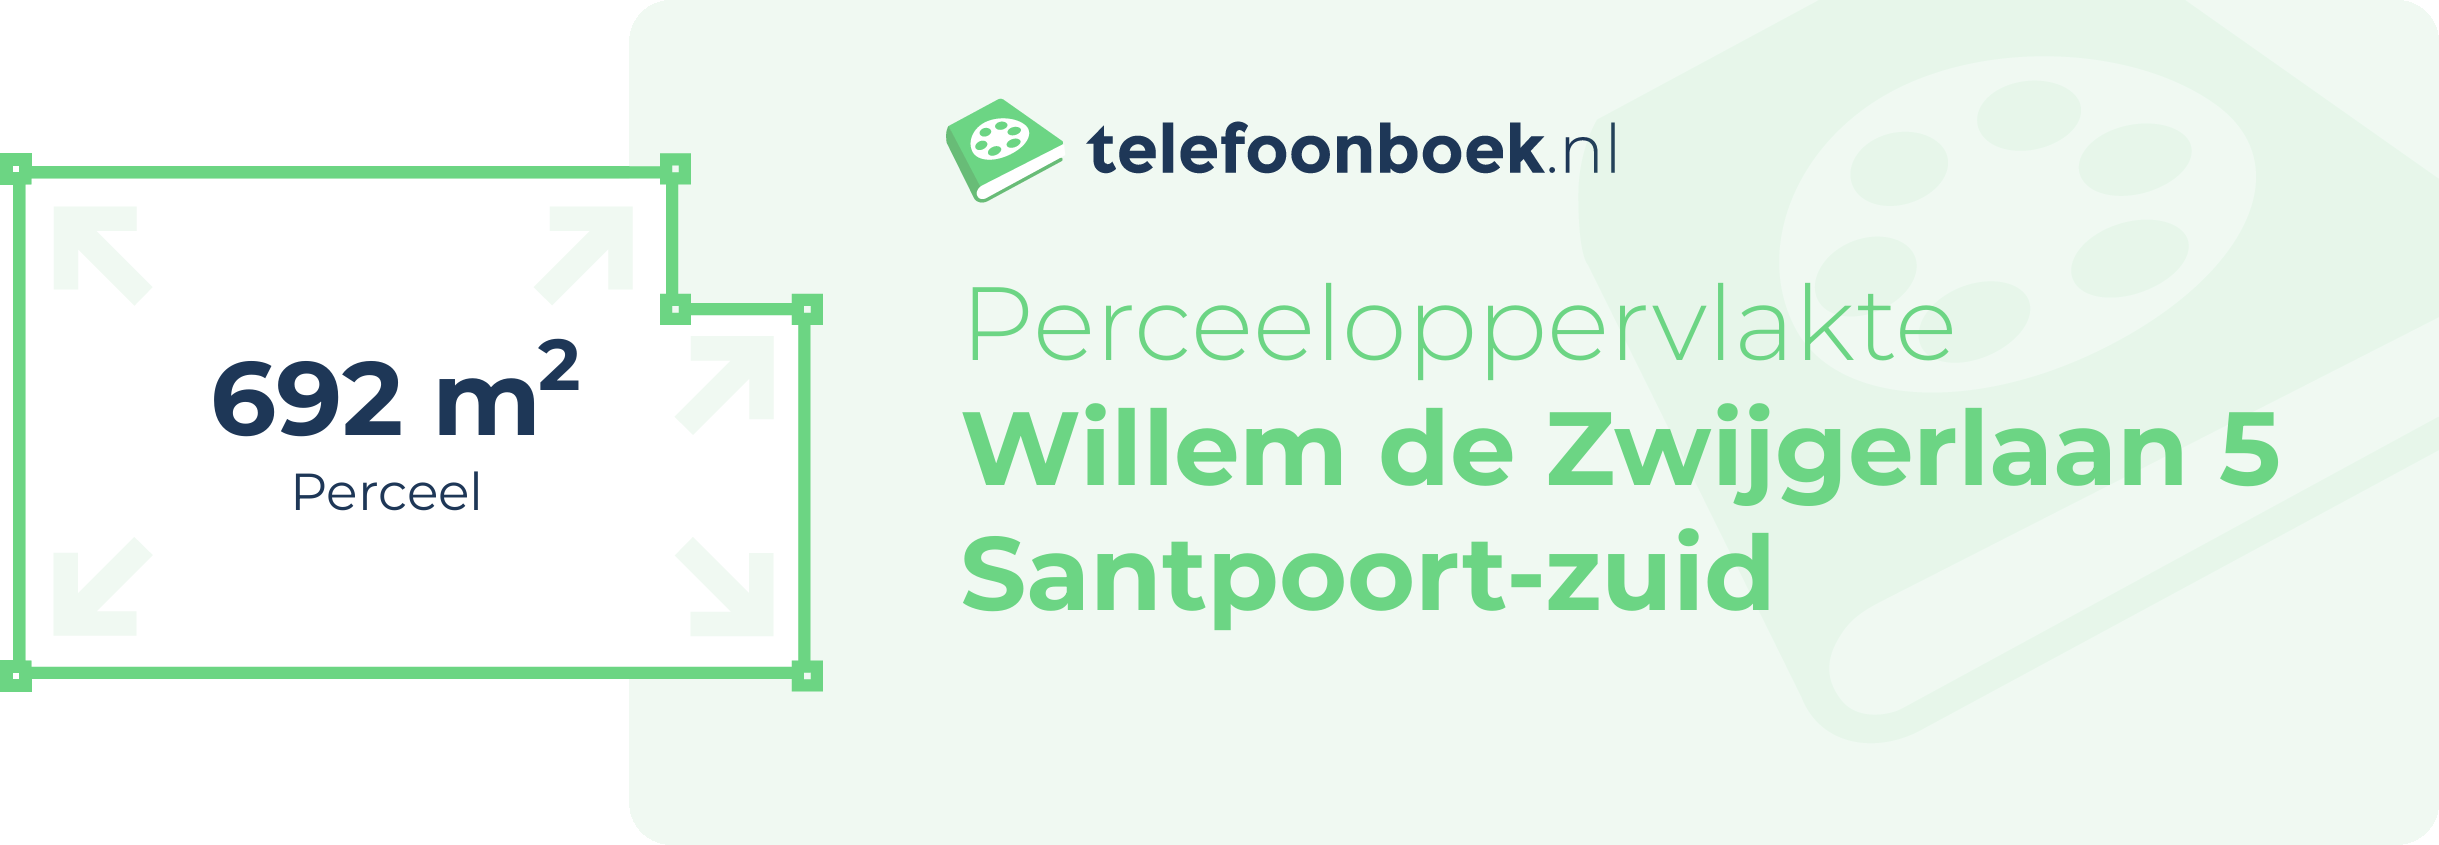 Perceeloppervlakte Willem De Zwijgerlaan 5 Santpoort-Zuid